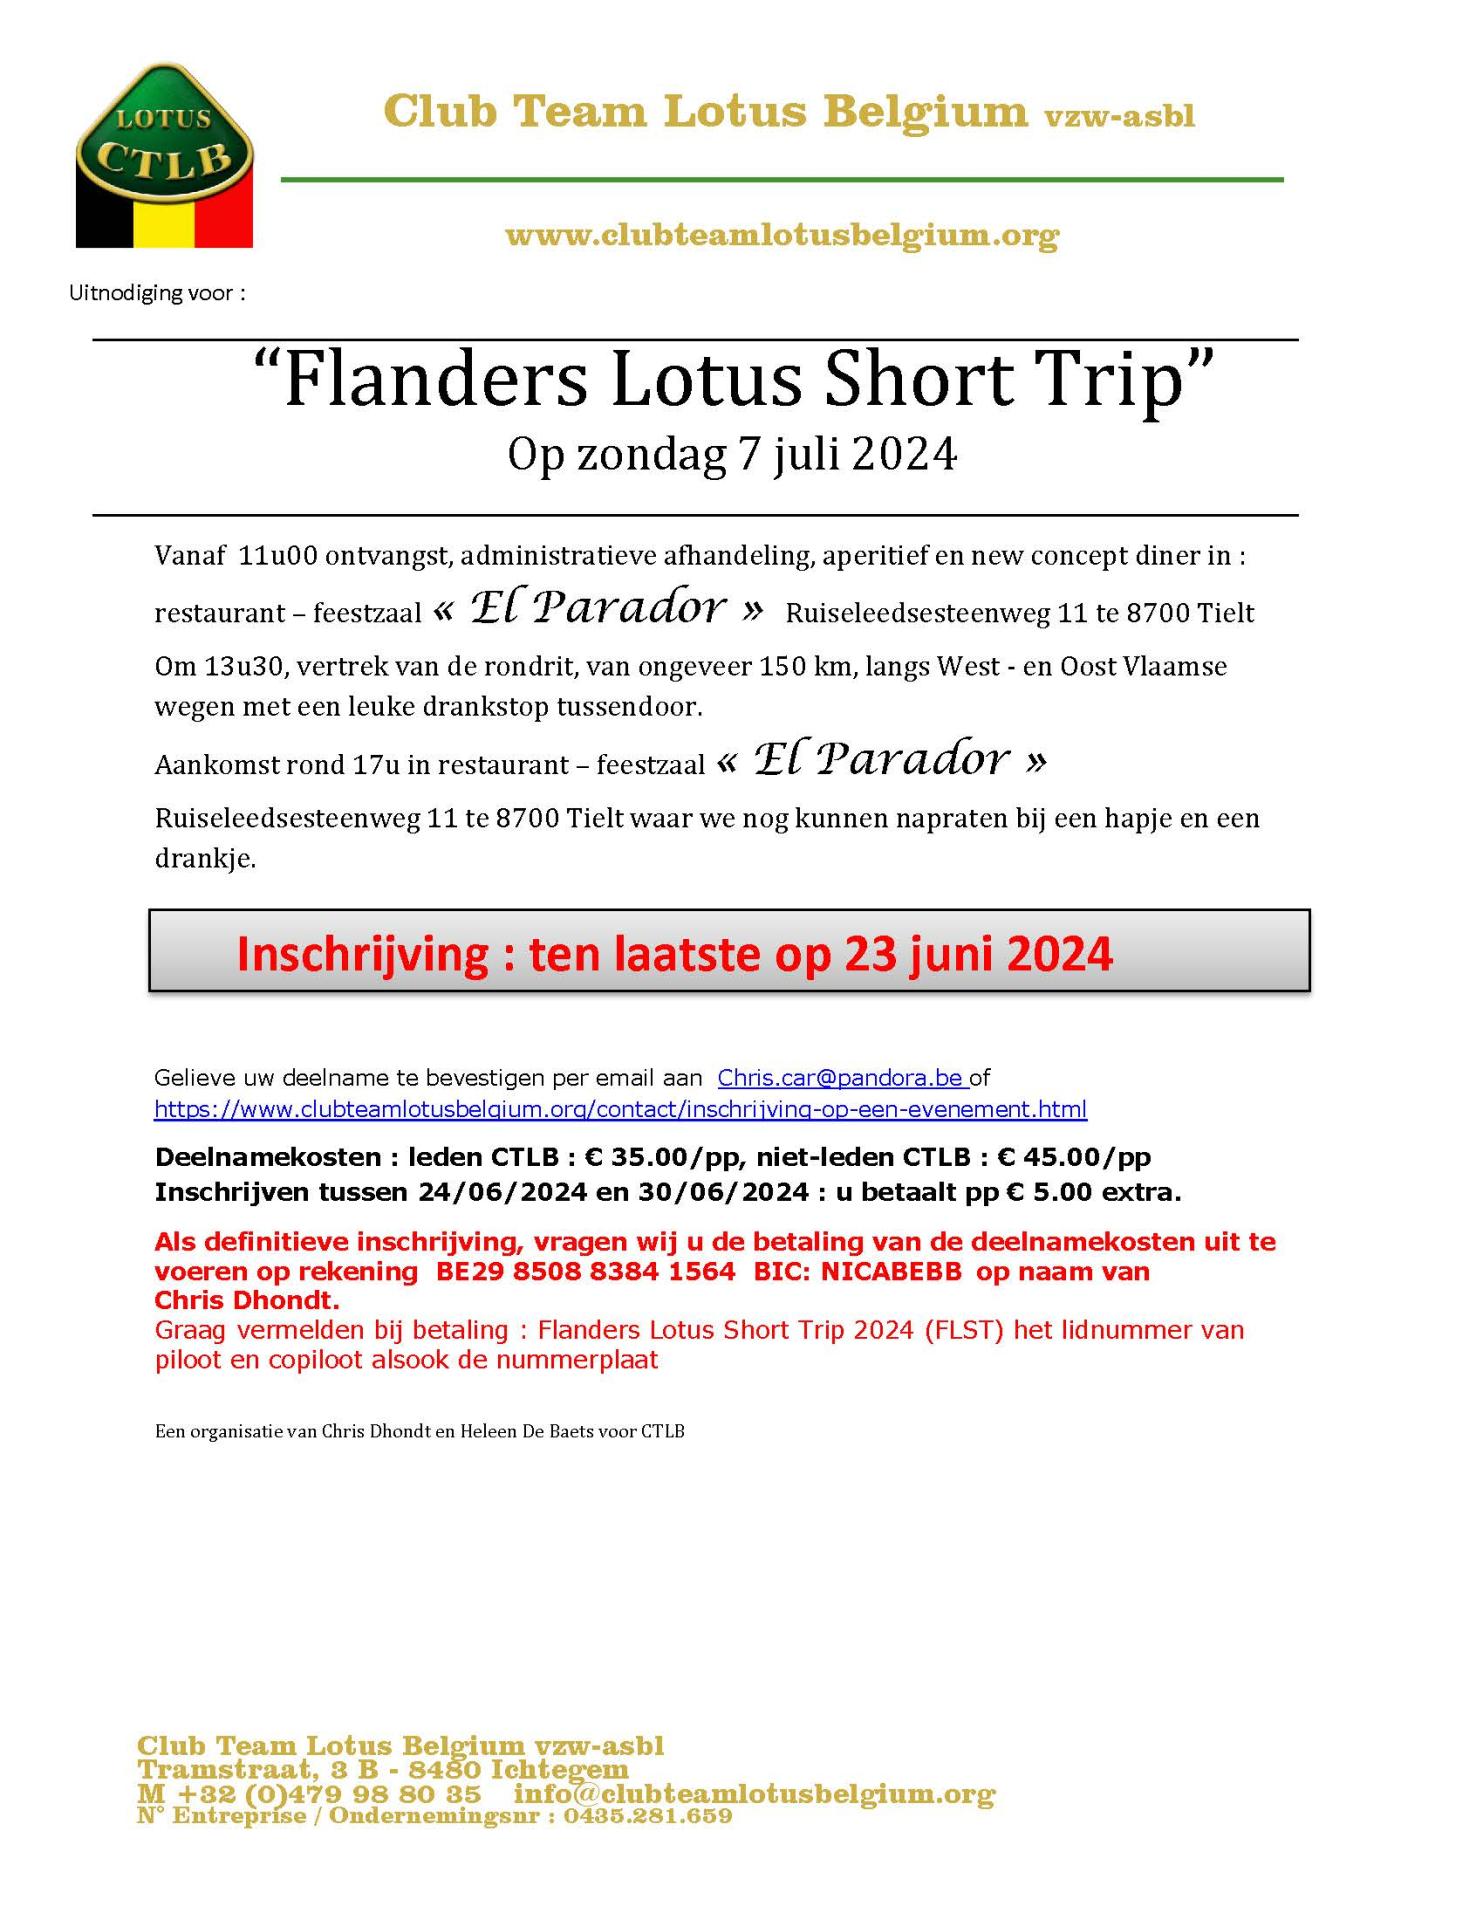 Uitnodiging flanders lotus trip 2024